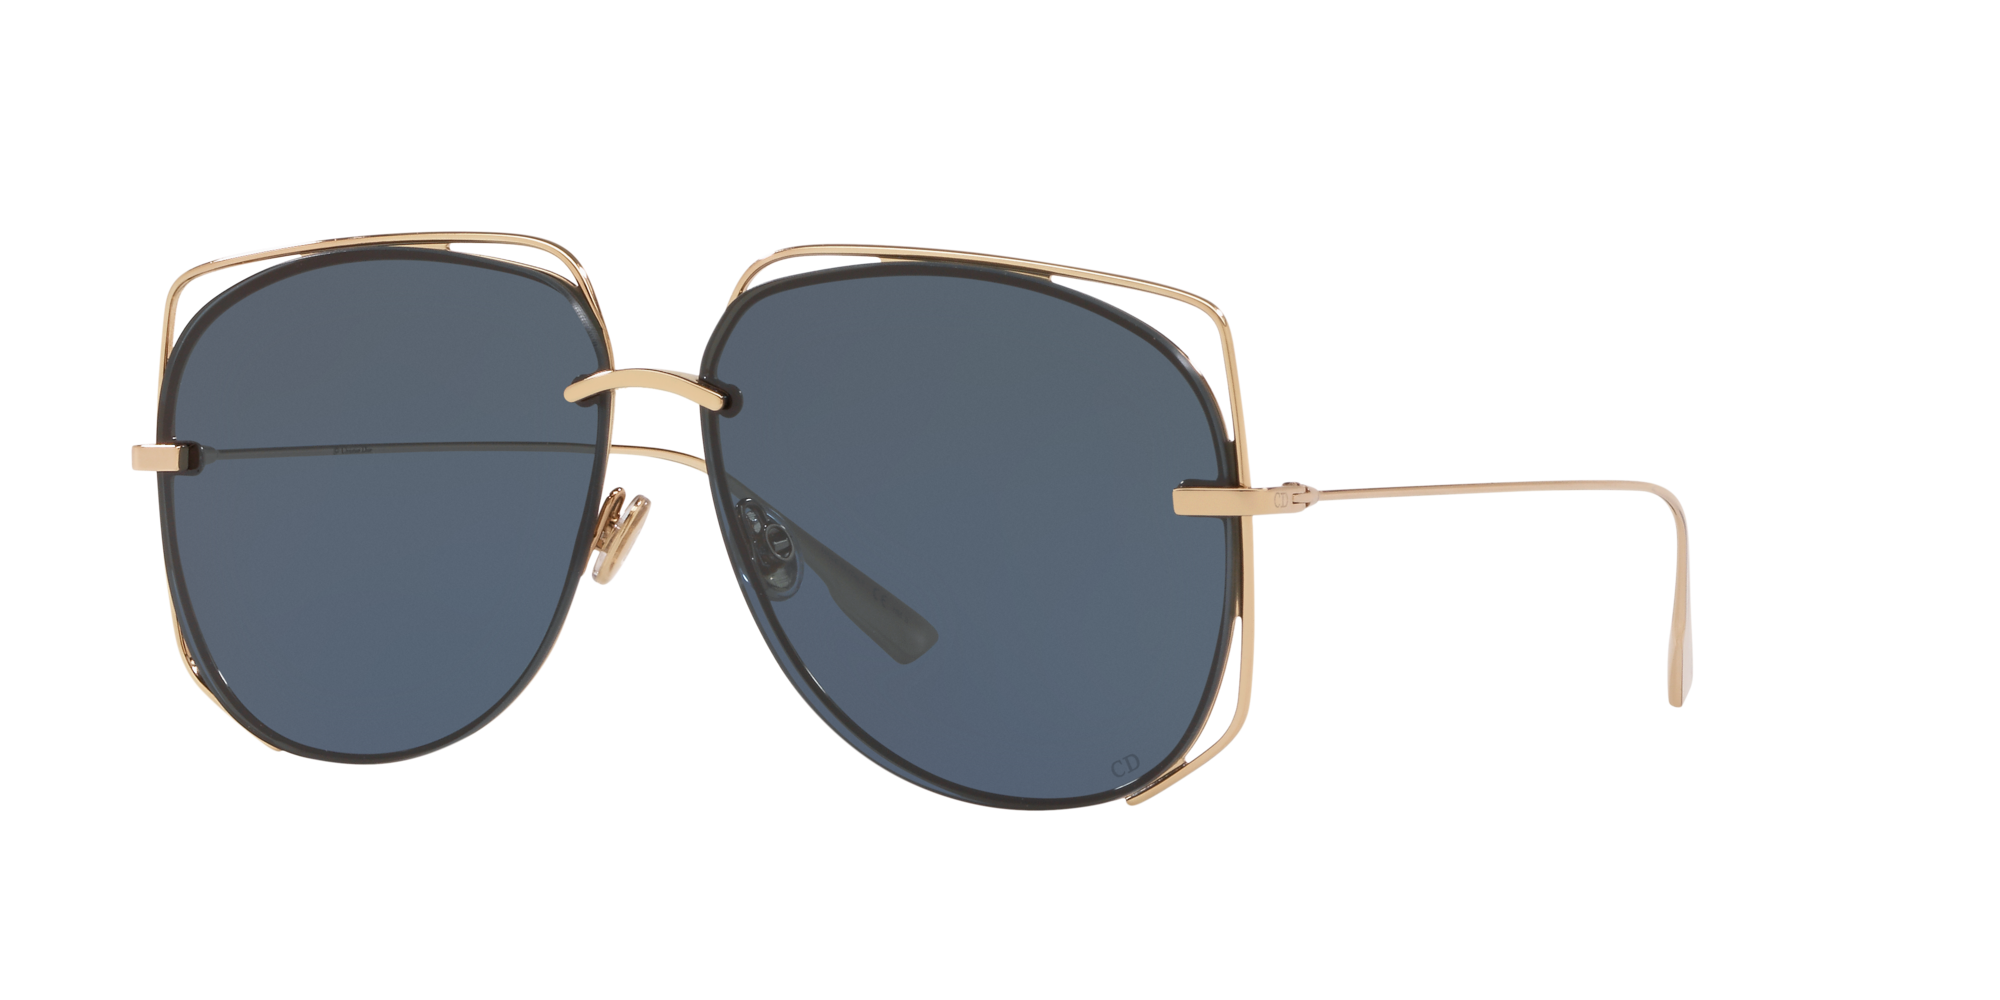 new dior sunglasses 2019